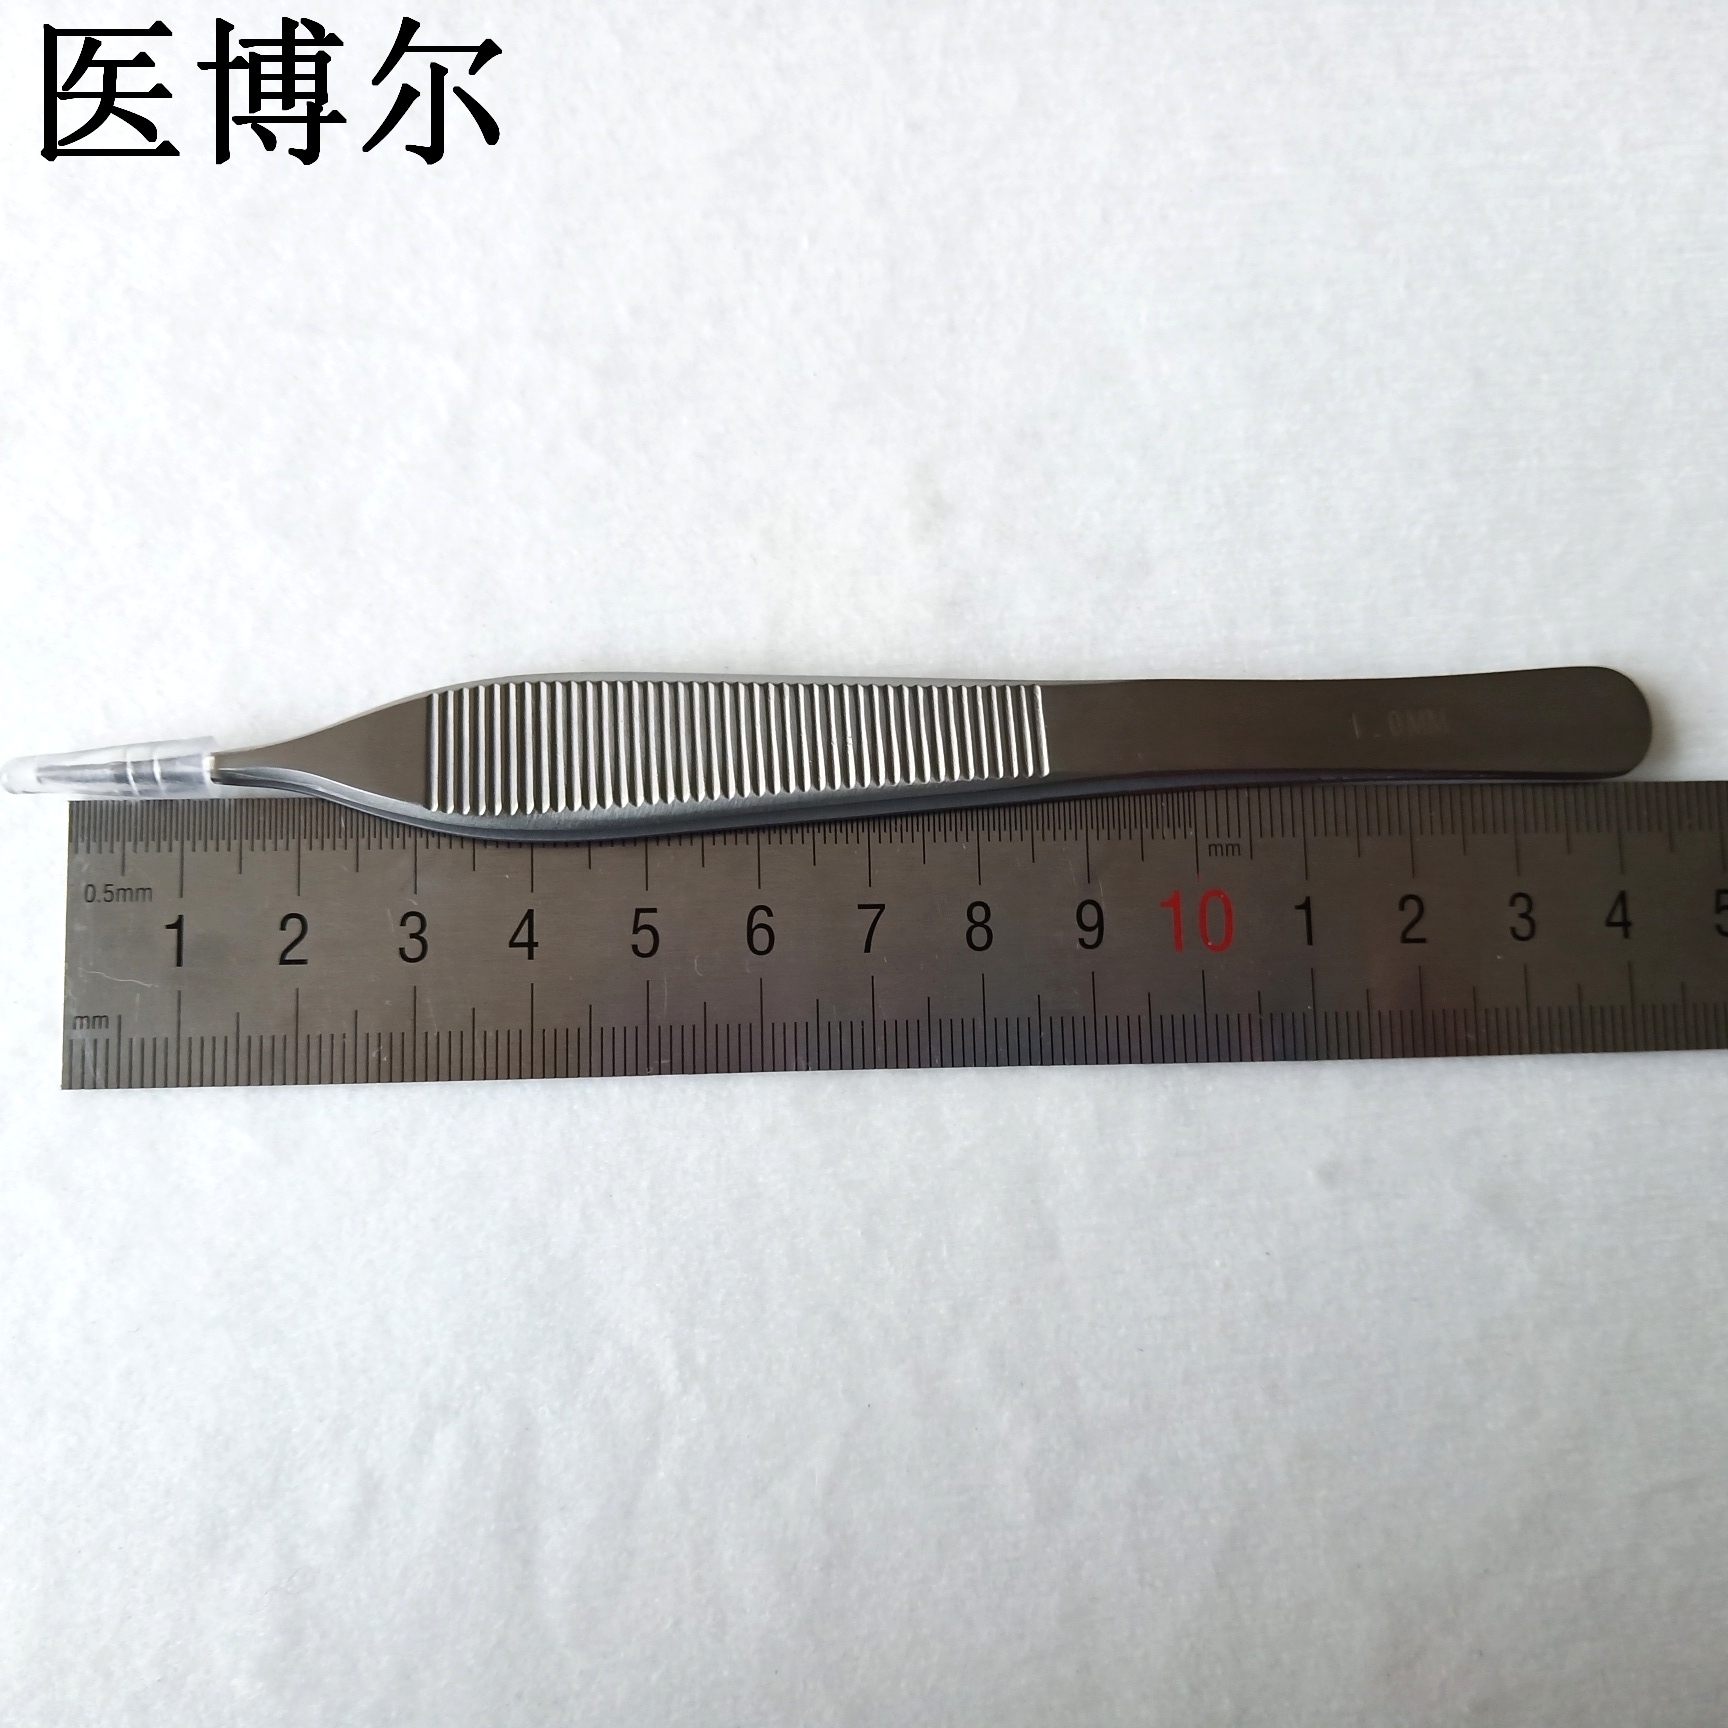 14cm整形镊1.0齿 (9)_看图王.jpg